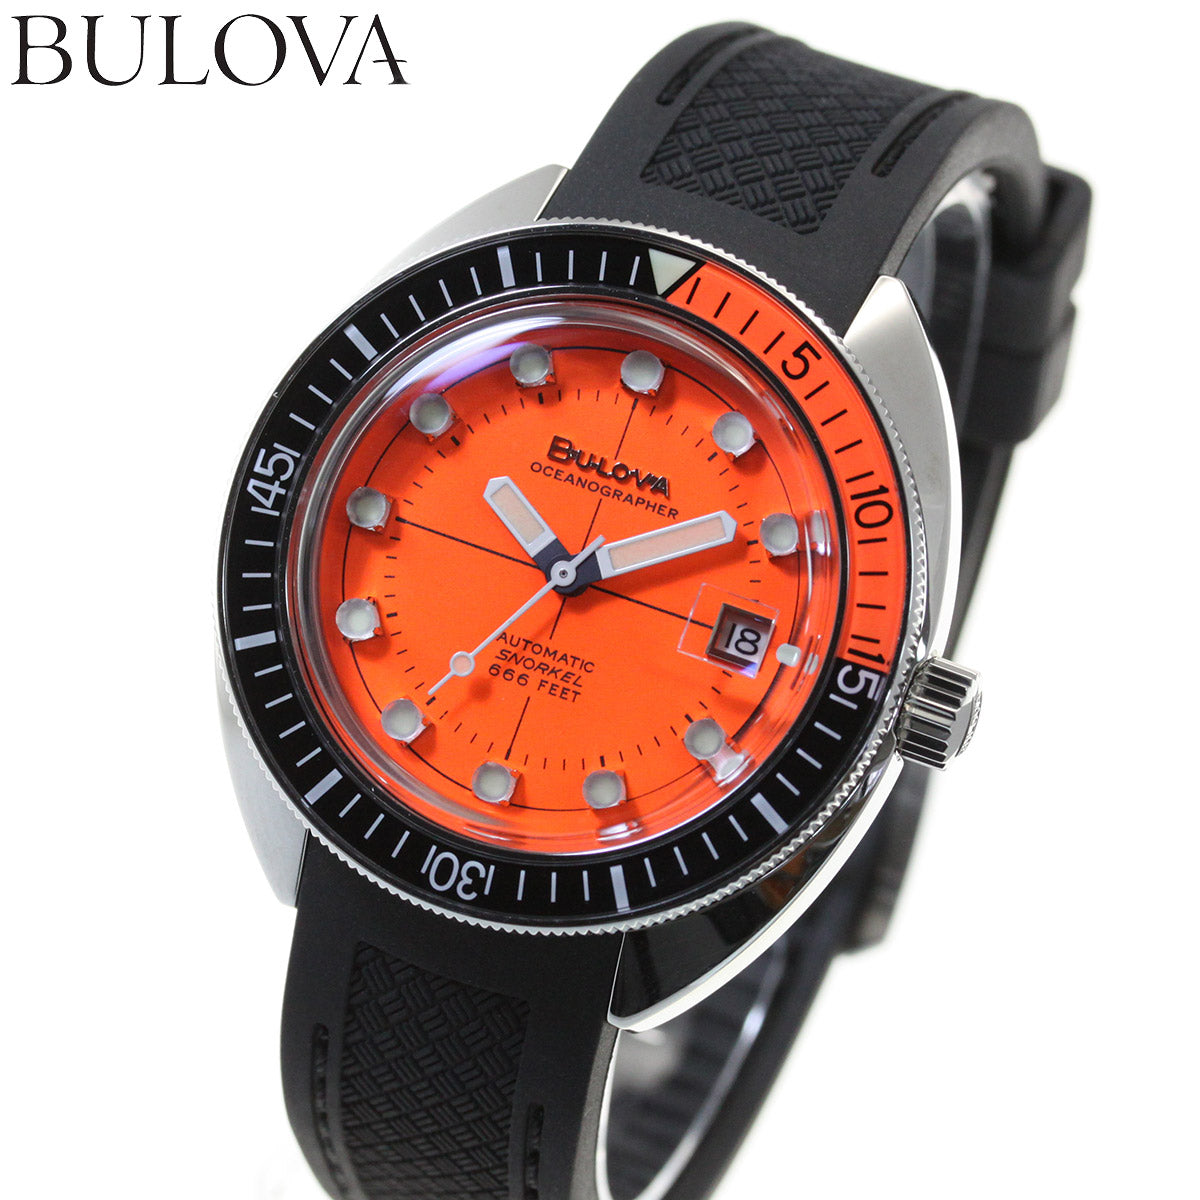 ブローバ BULOVA 腕時計 メンズ 自動巻き ダイバー アーカイブシリーズ